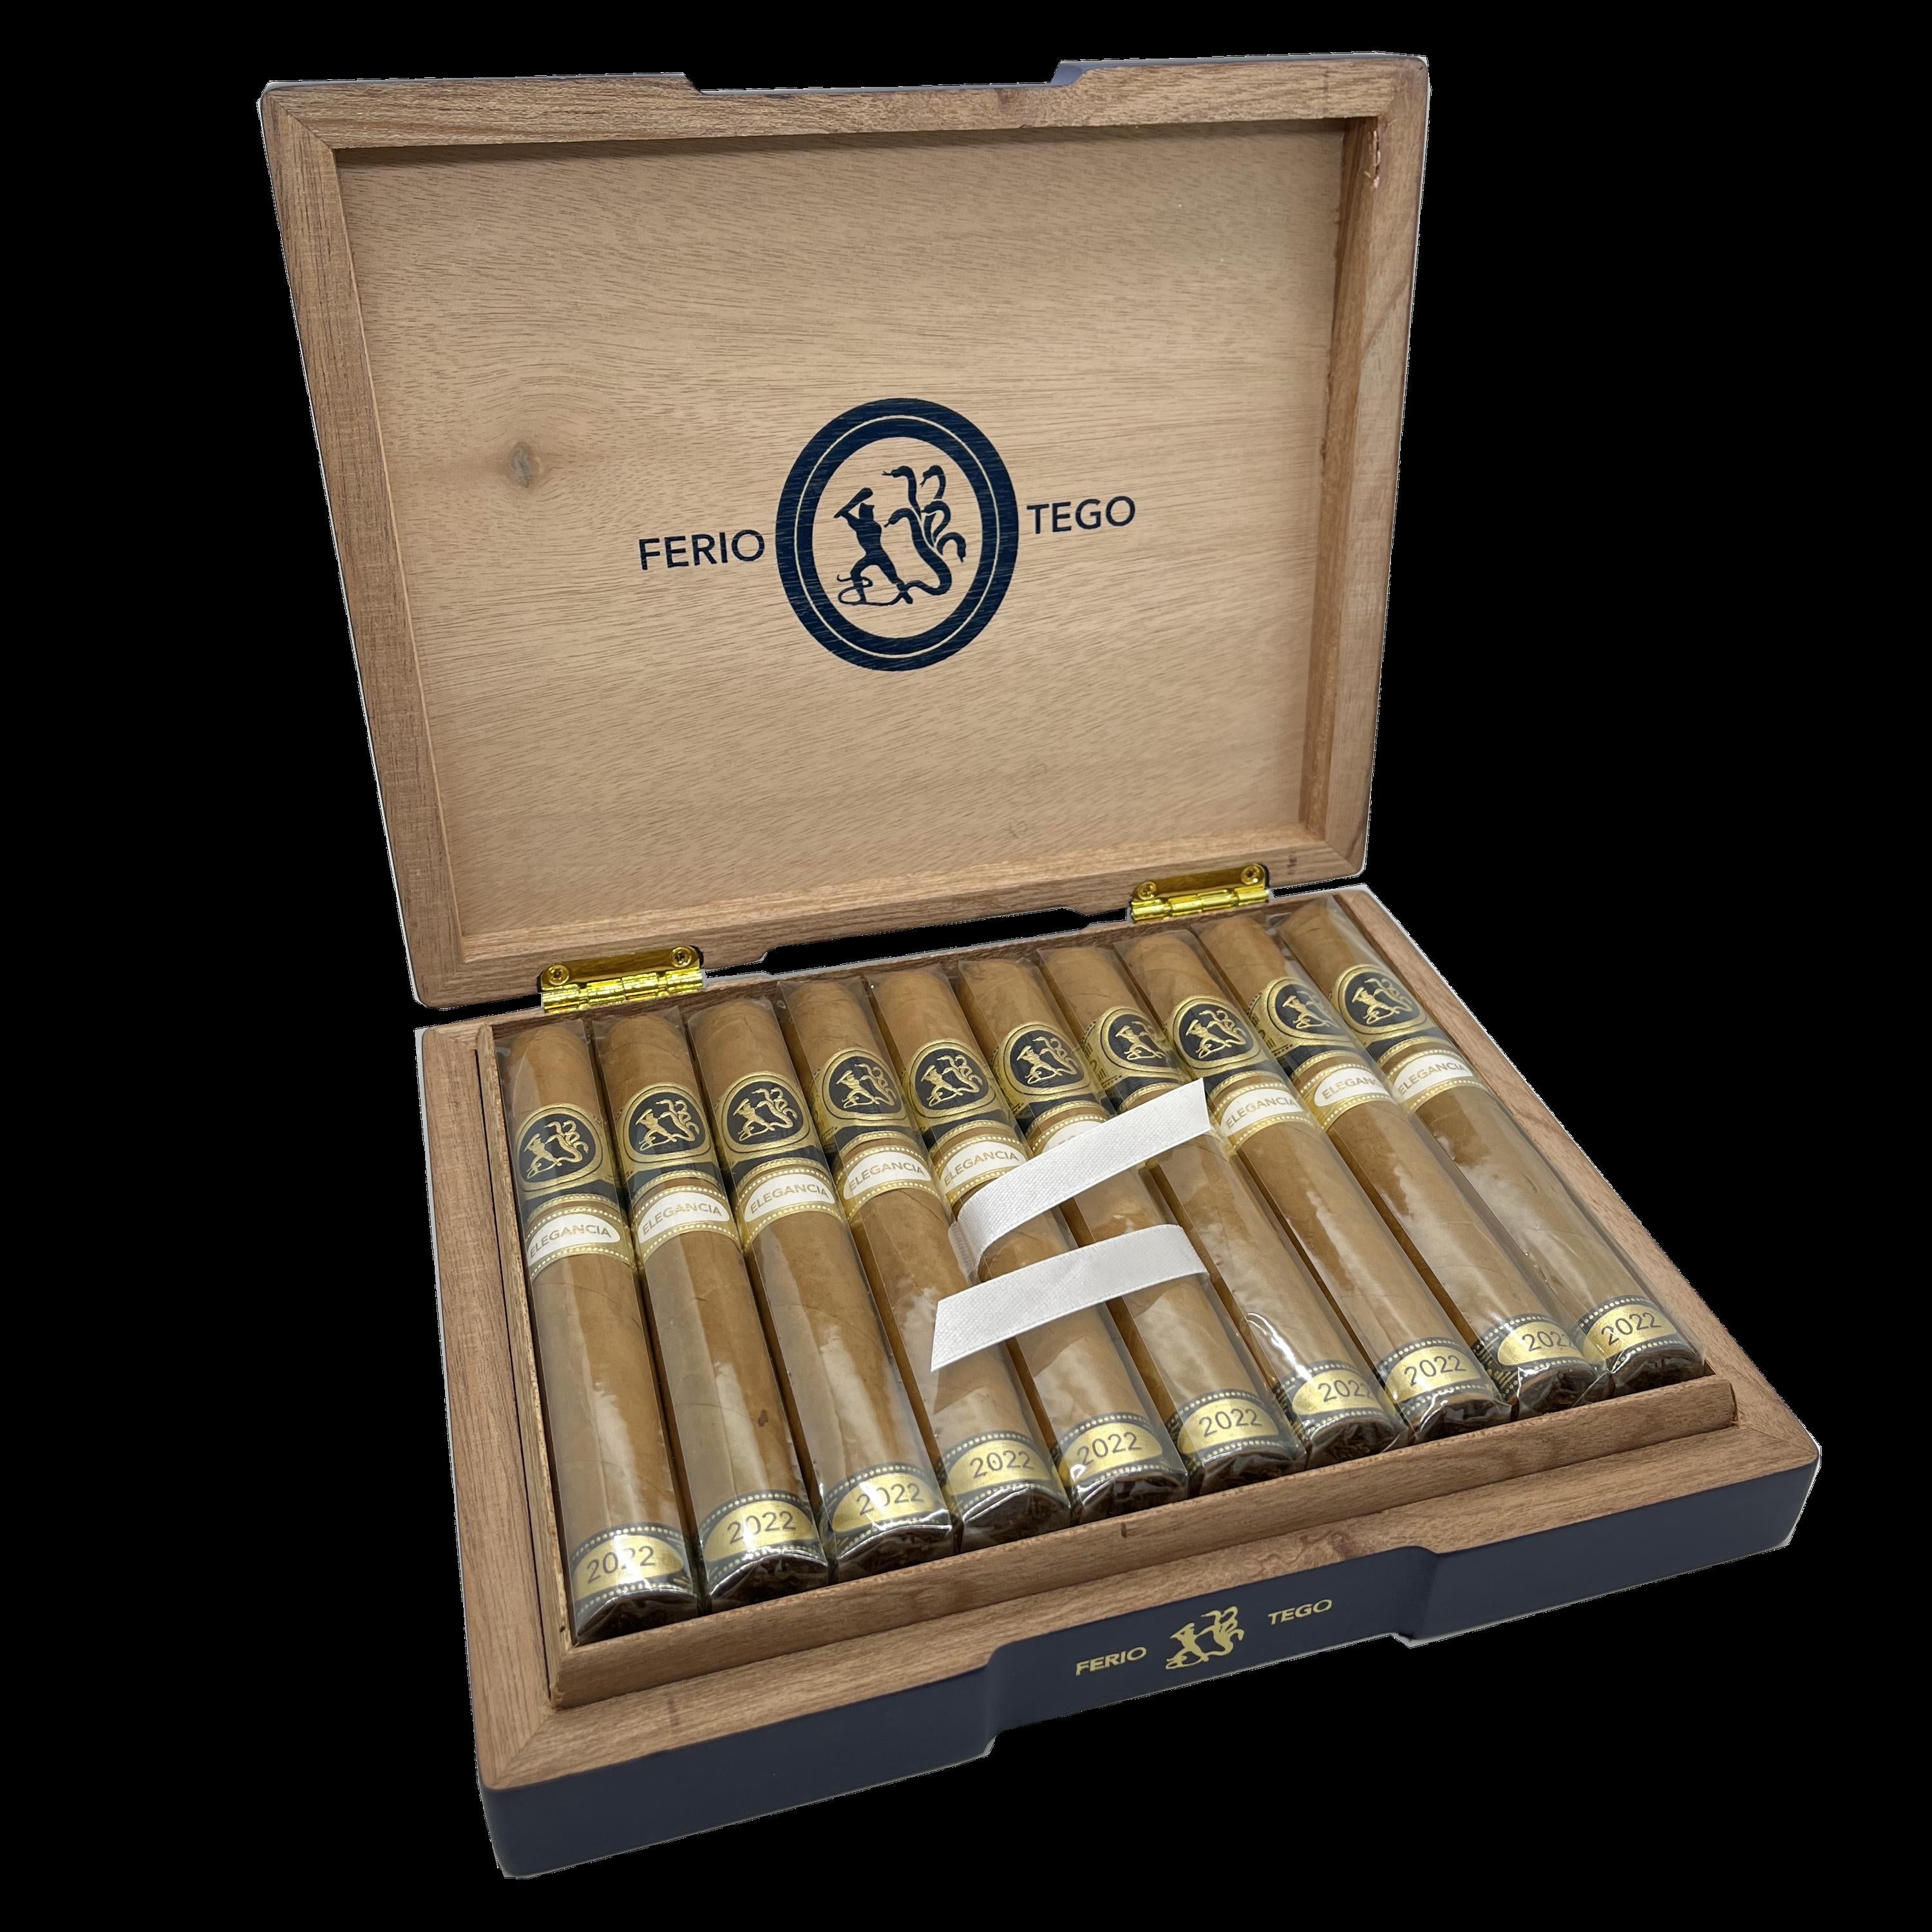 Ferio Tego Elegancia Cigar Box